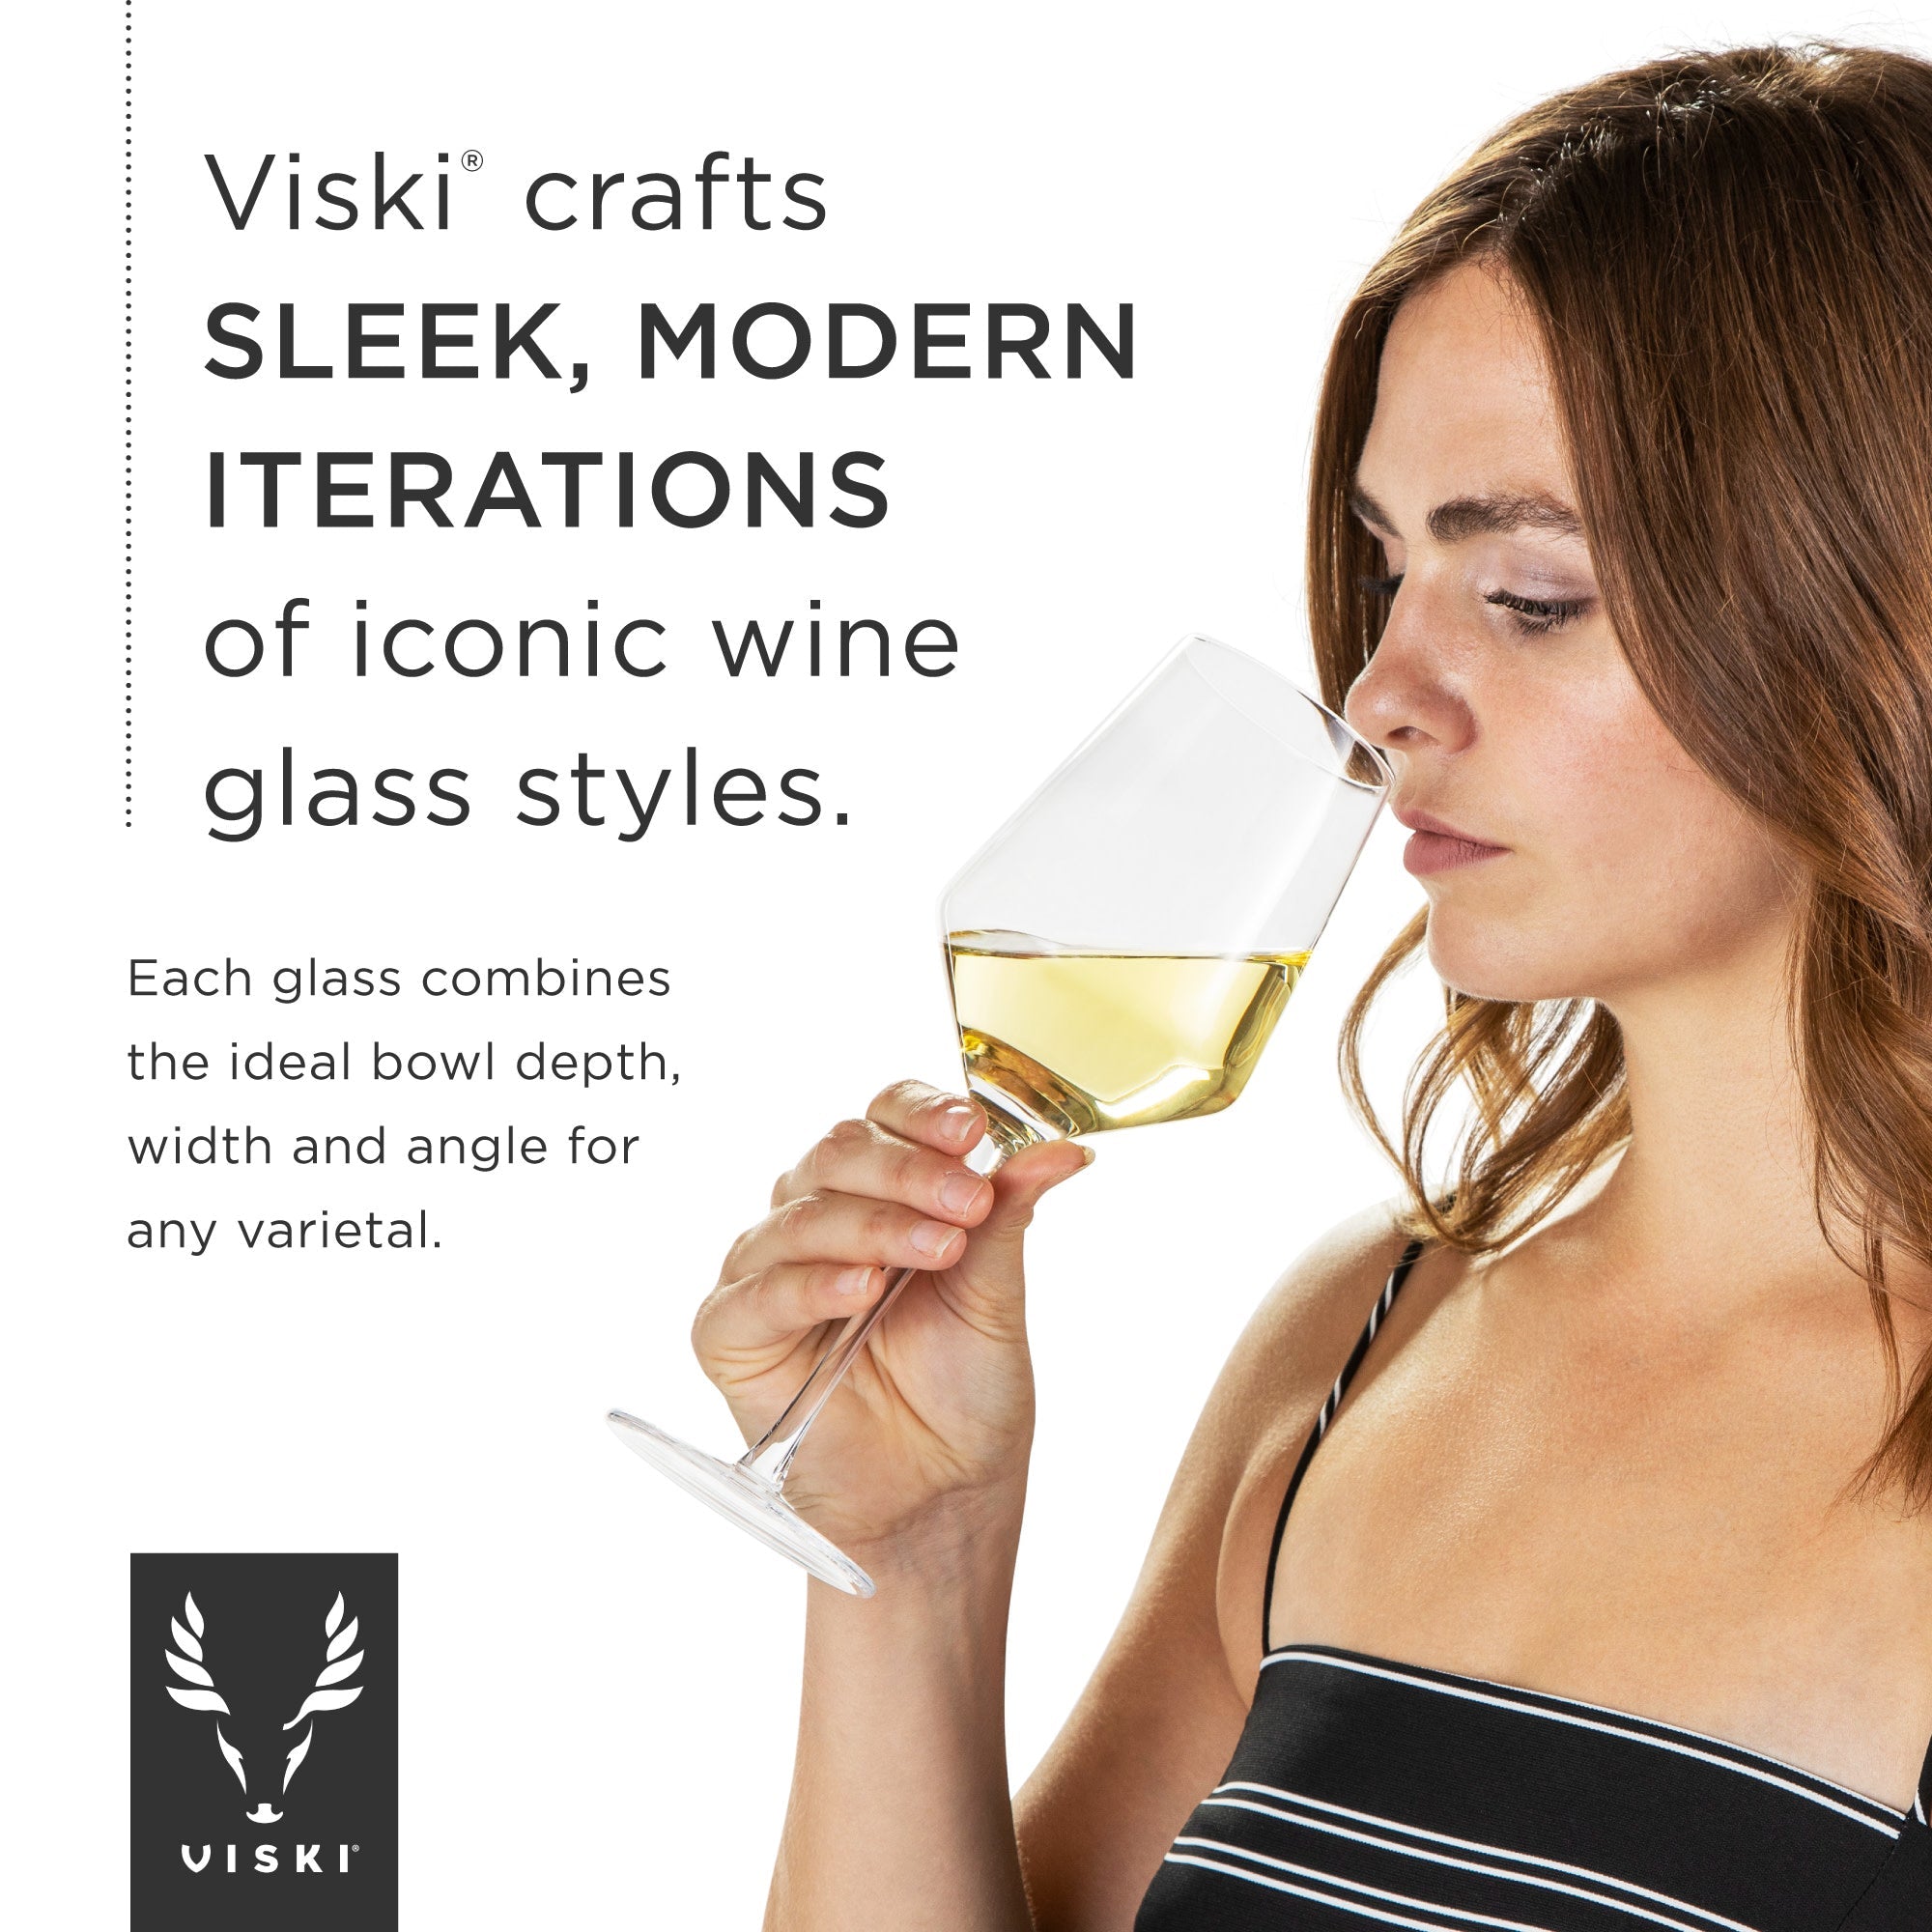 Angled Crystal Prosecco Glasses by Viski® (9426) Drinkware Viski